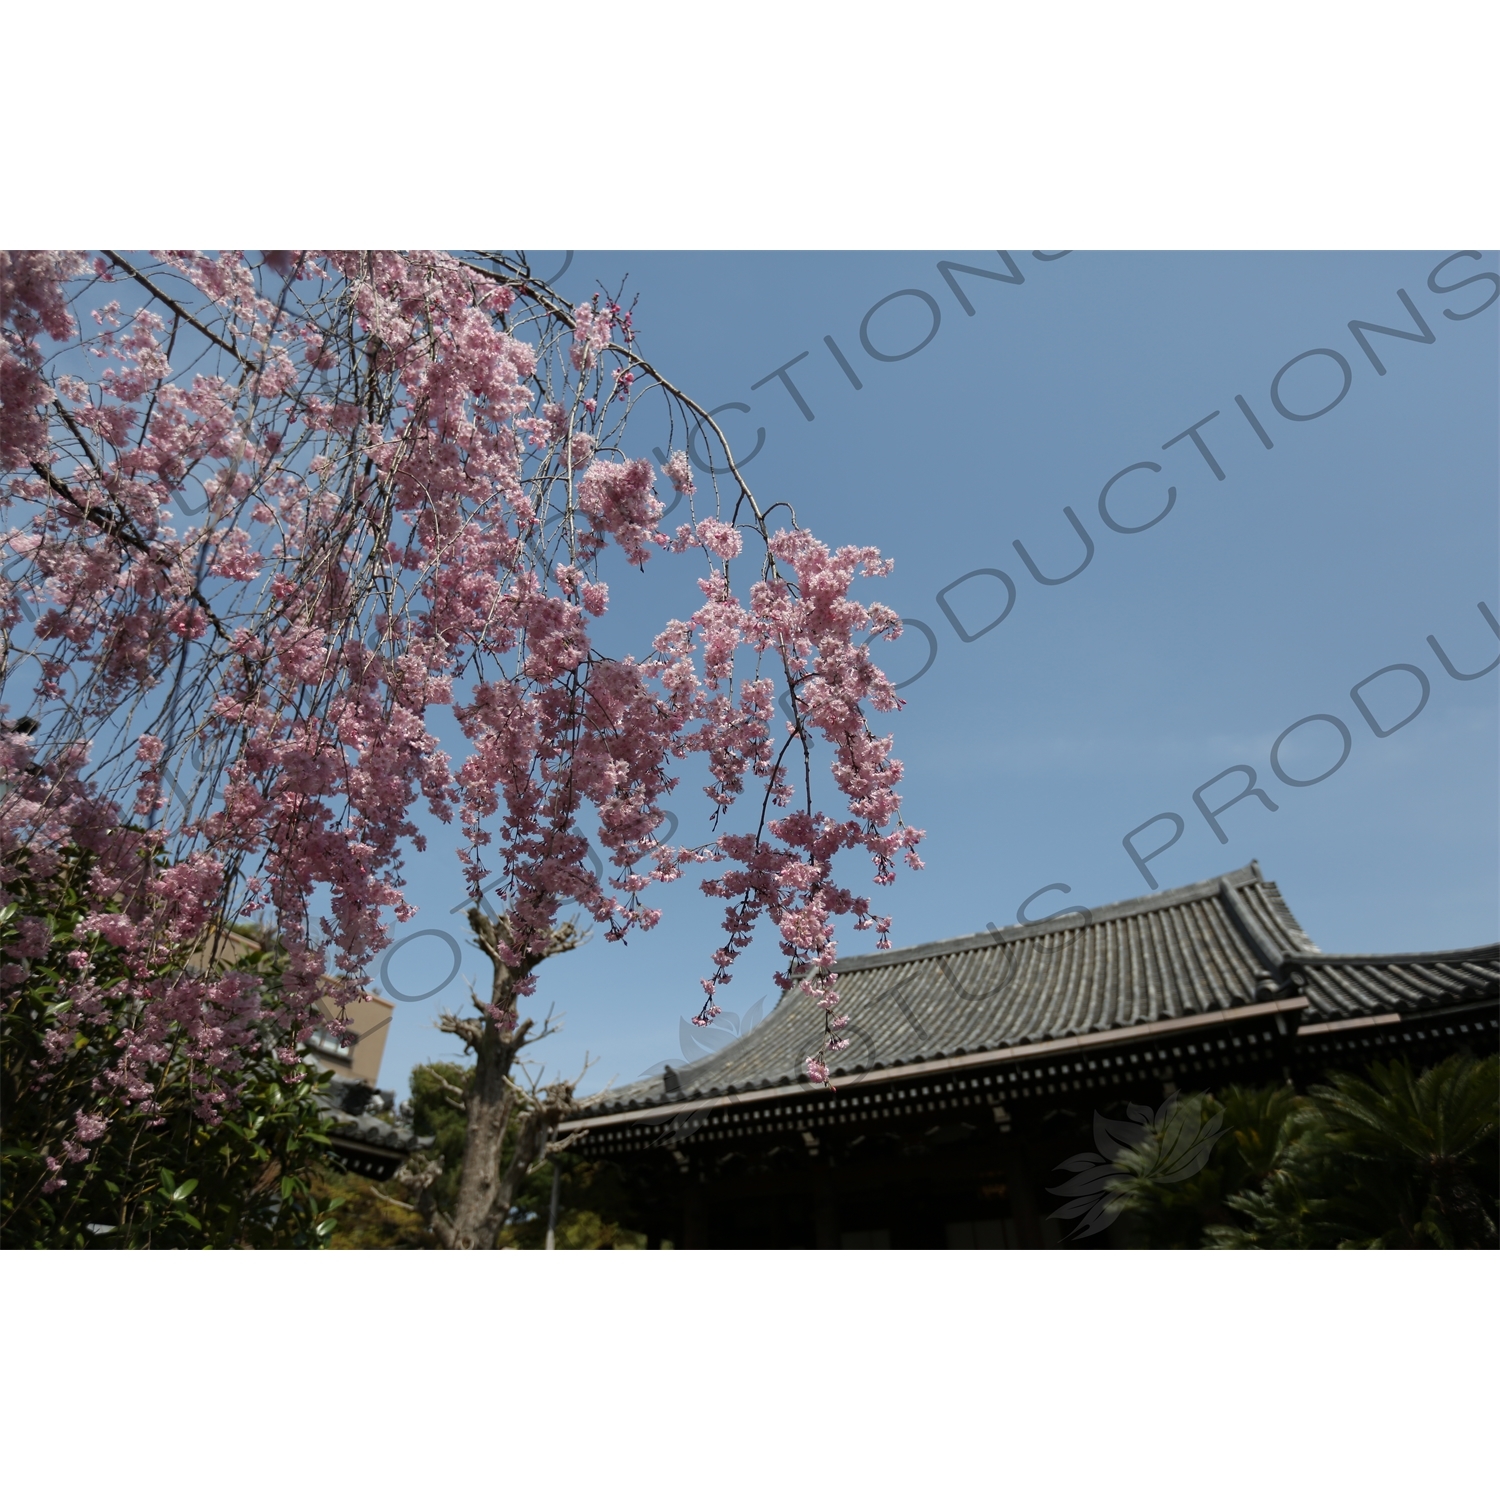 Cherry Blossom Tree in Kofukuji in Nara